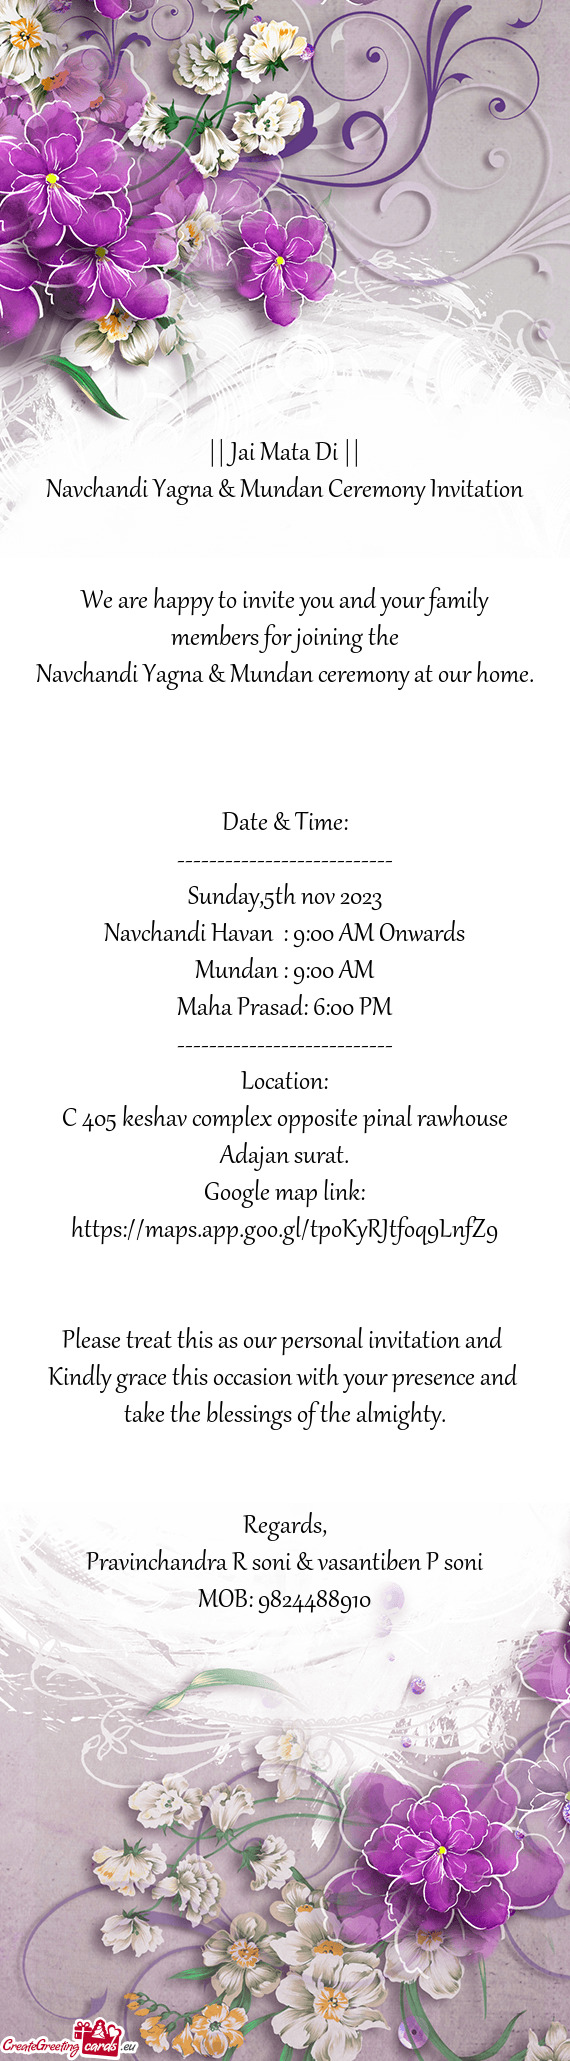 Navchandi Yagna & Mundan Ceremony Invitation